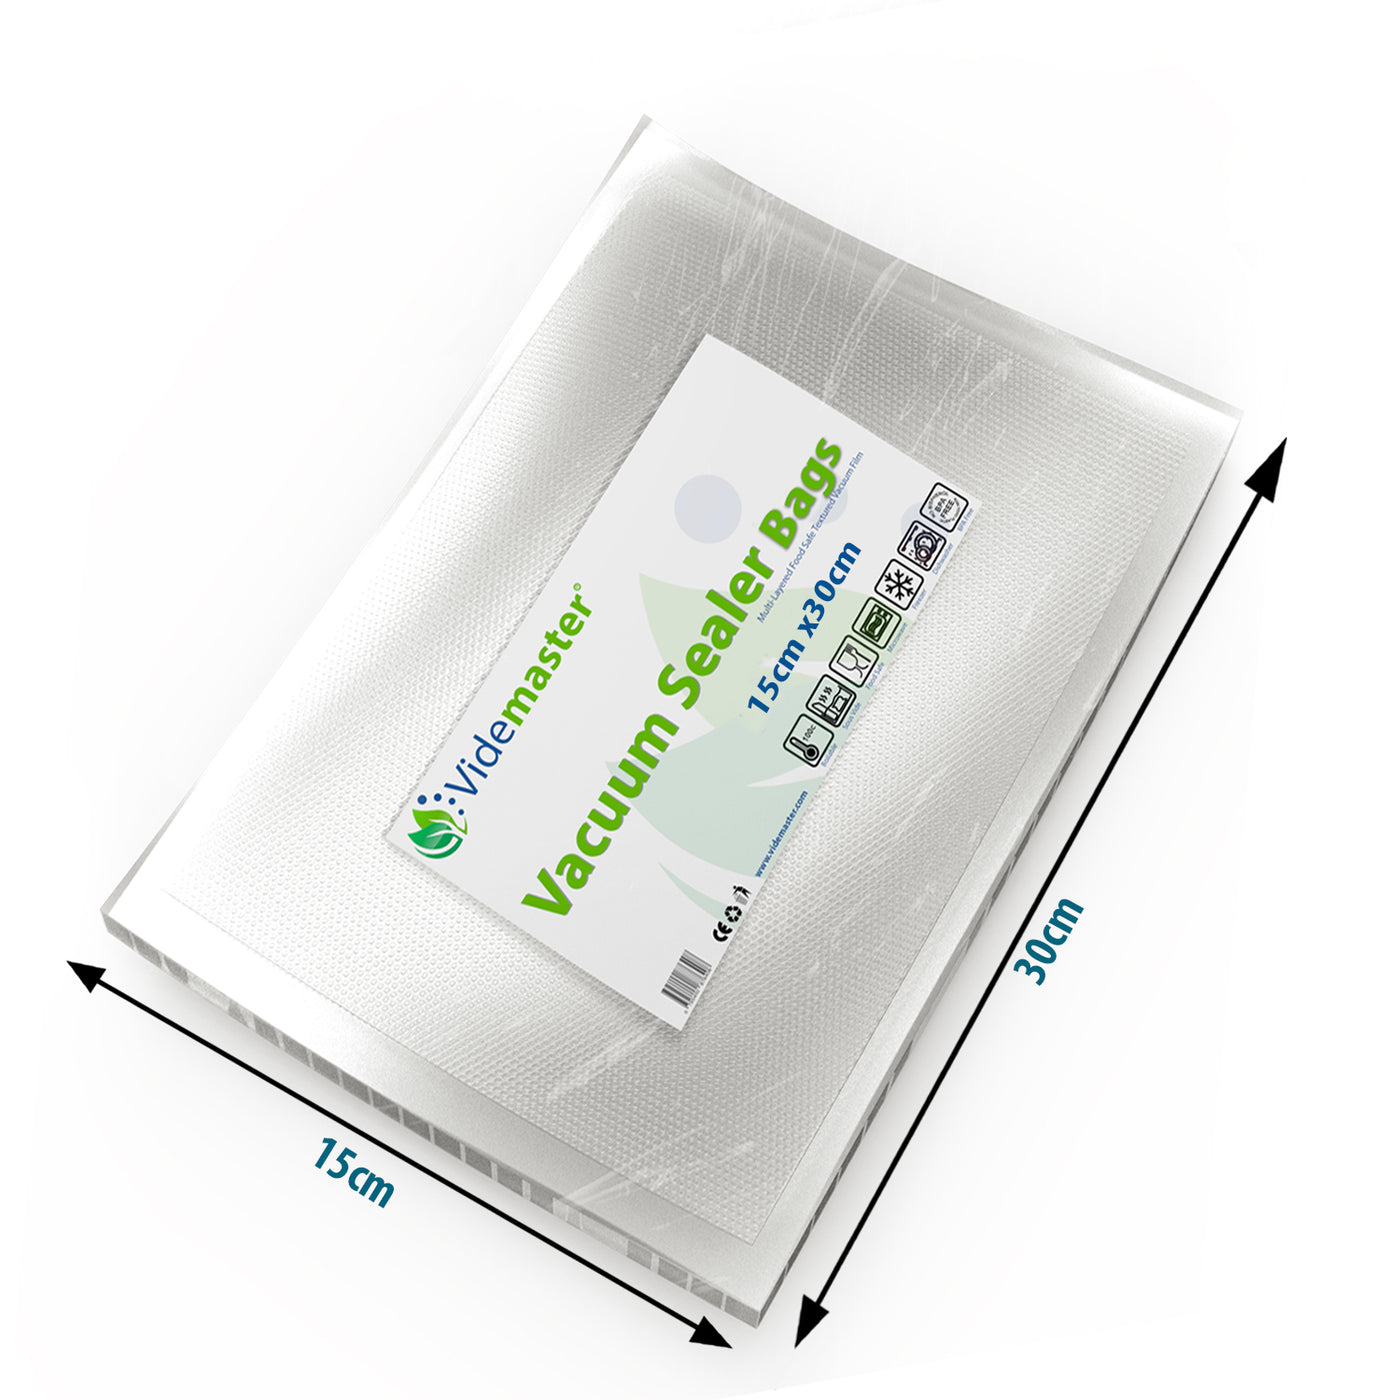 15 x 30 cm Vacuum Food Sealer Bags (100s)